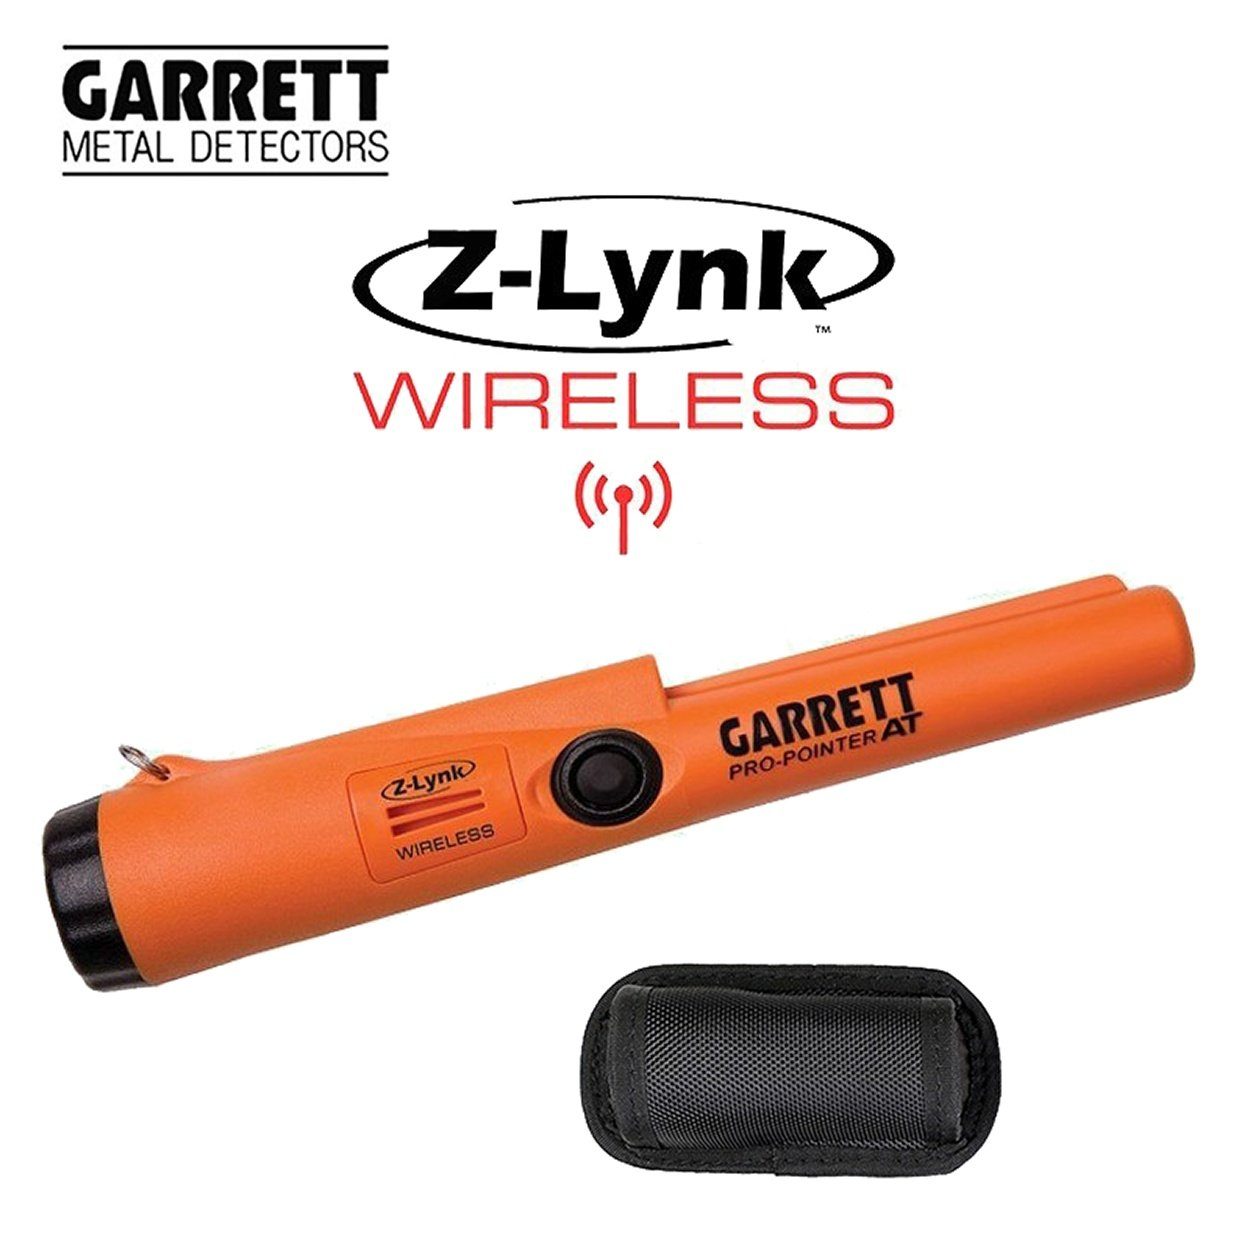 Garrett Metalldetektor Pro Pointer AT Z-Lynk Wireless Pinpointer, Wasserdicht | Ortungsgeräte